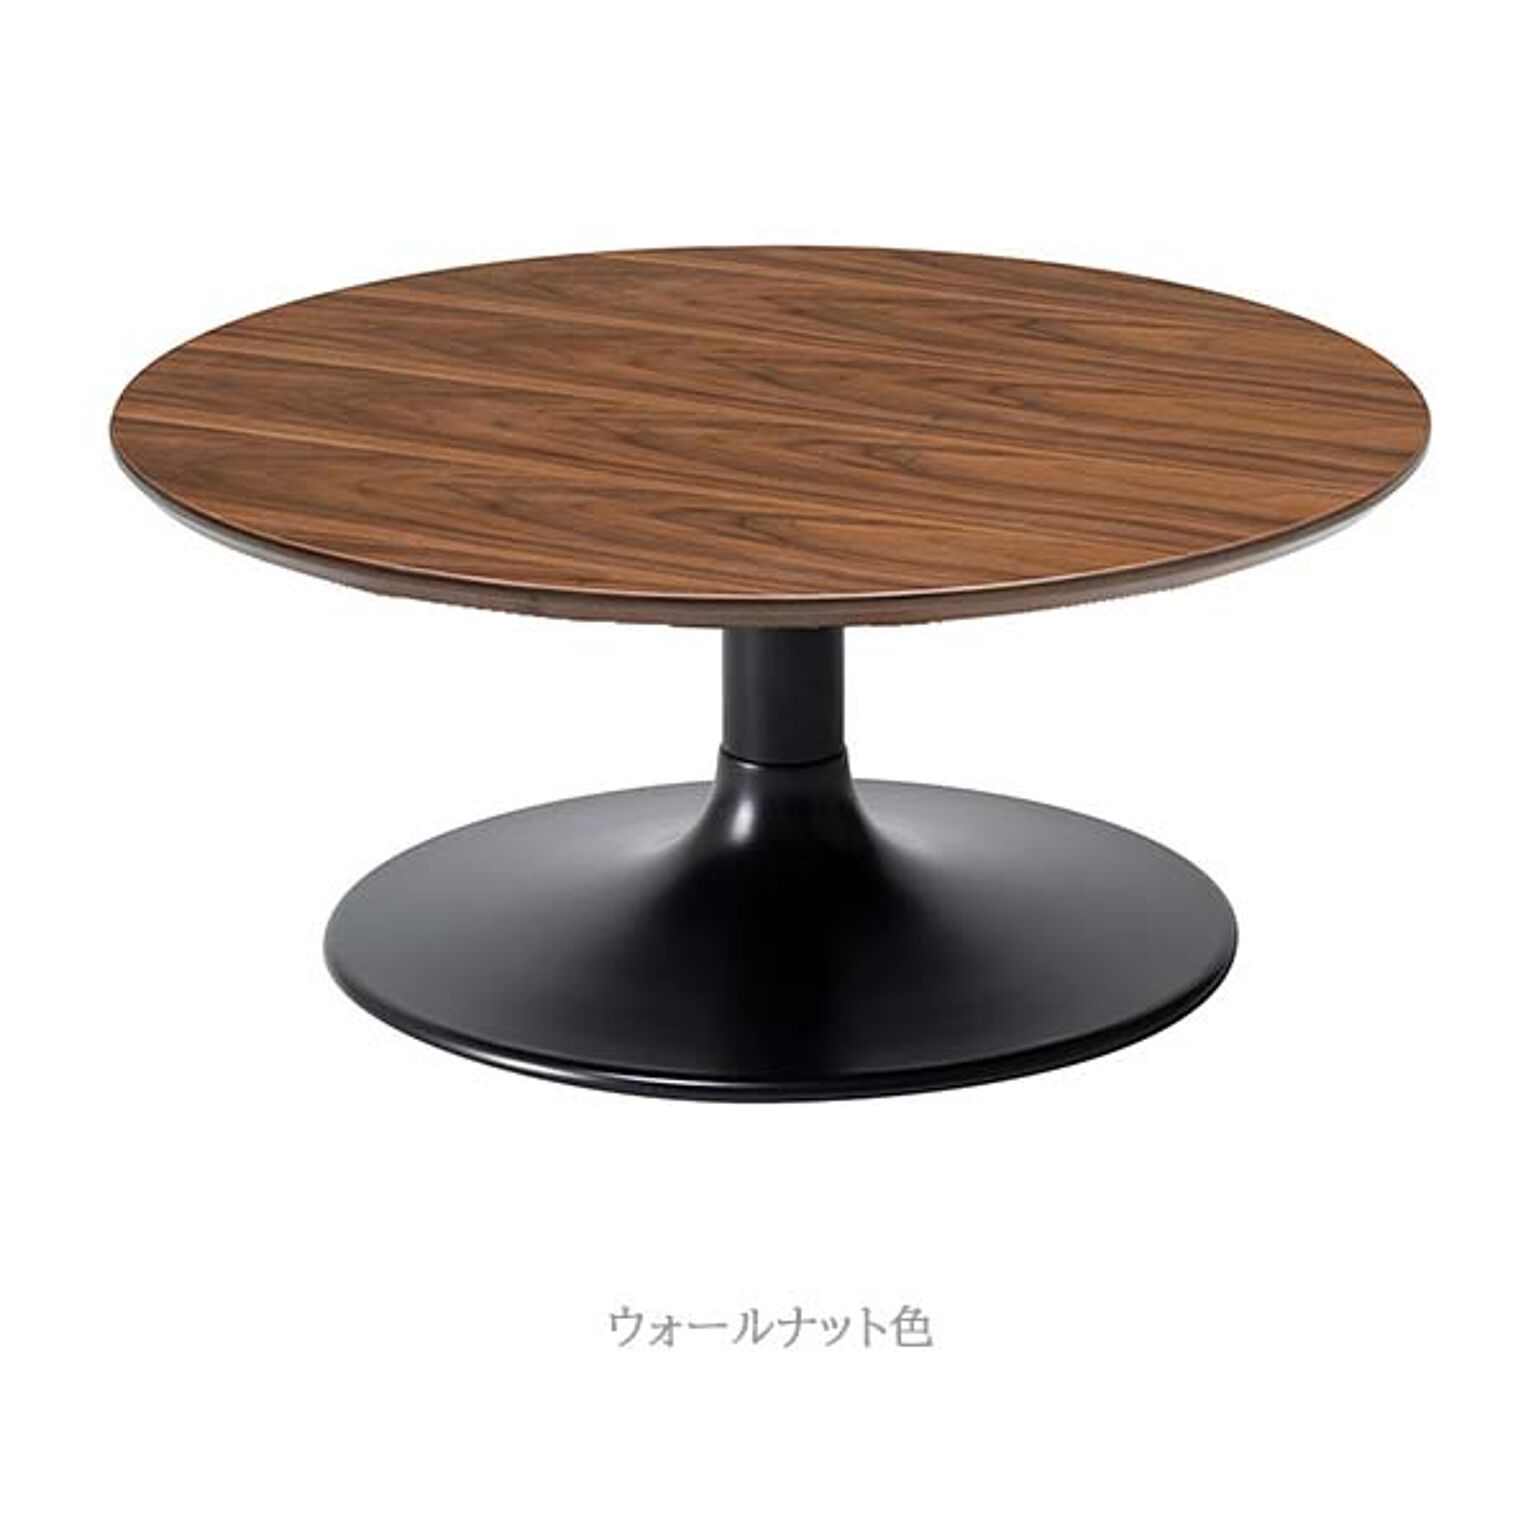 エムケーマエダ家具 LIETO ローテーブル グレー 幅80奥行80高さ35円形